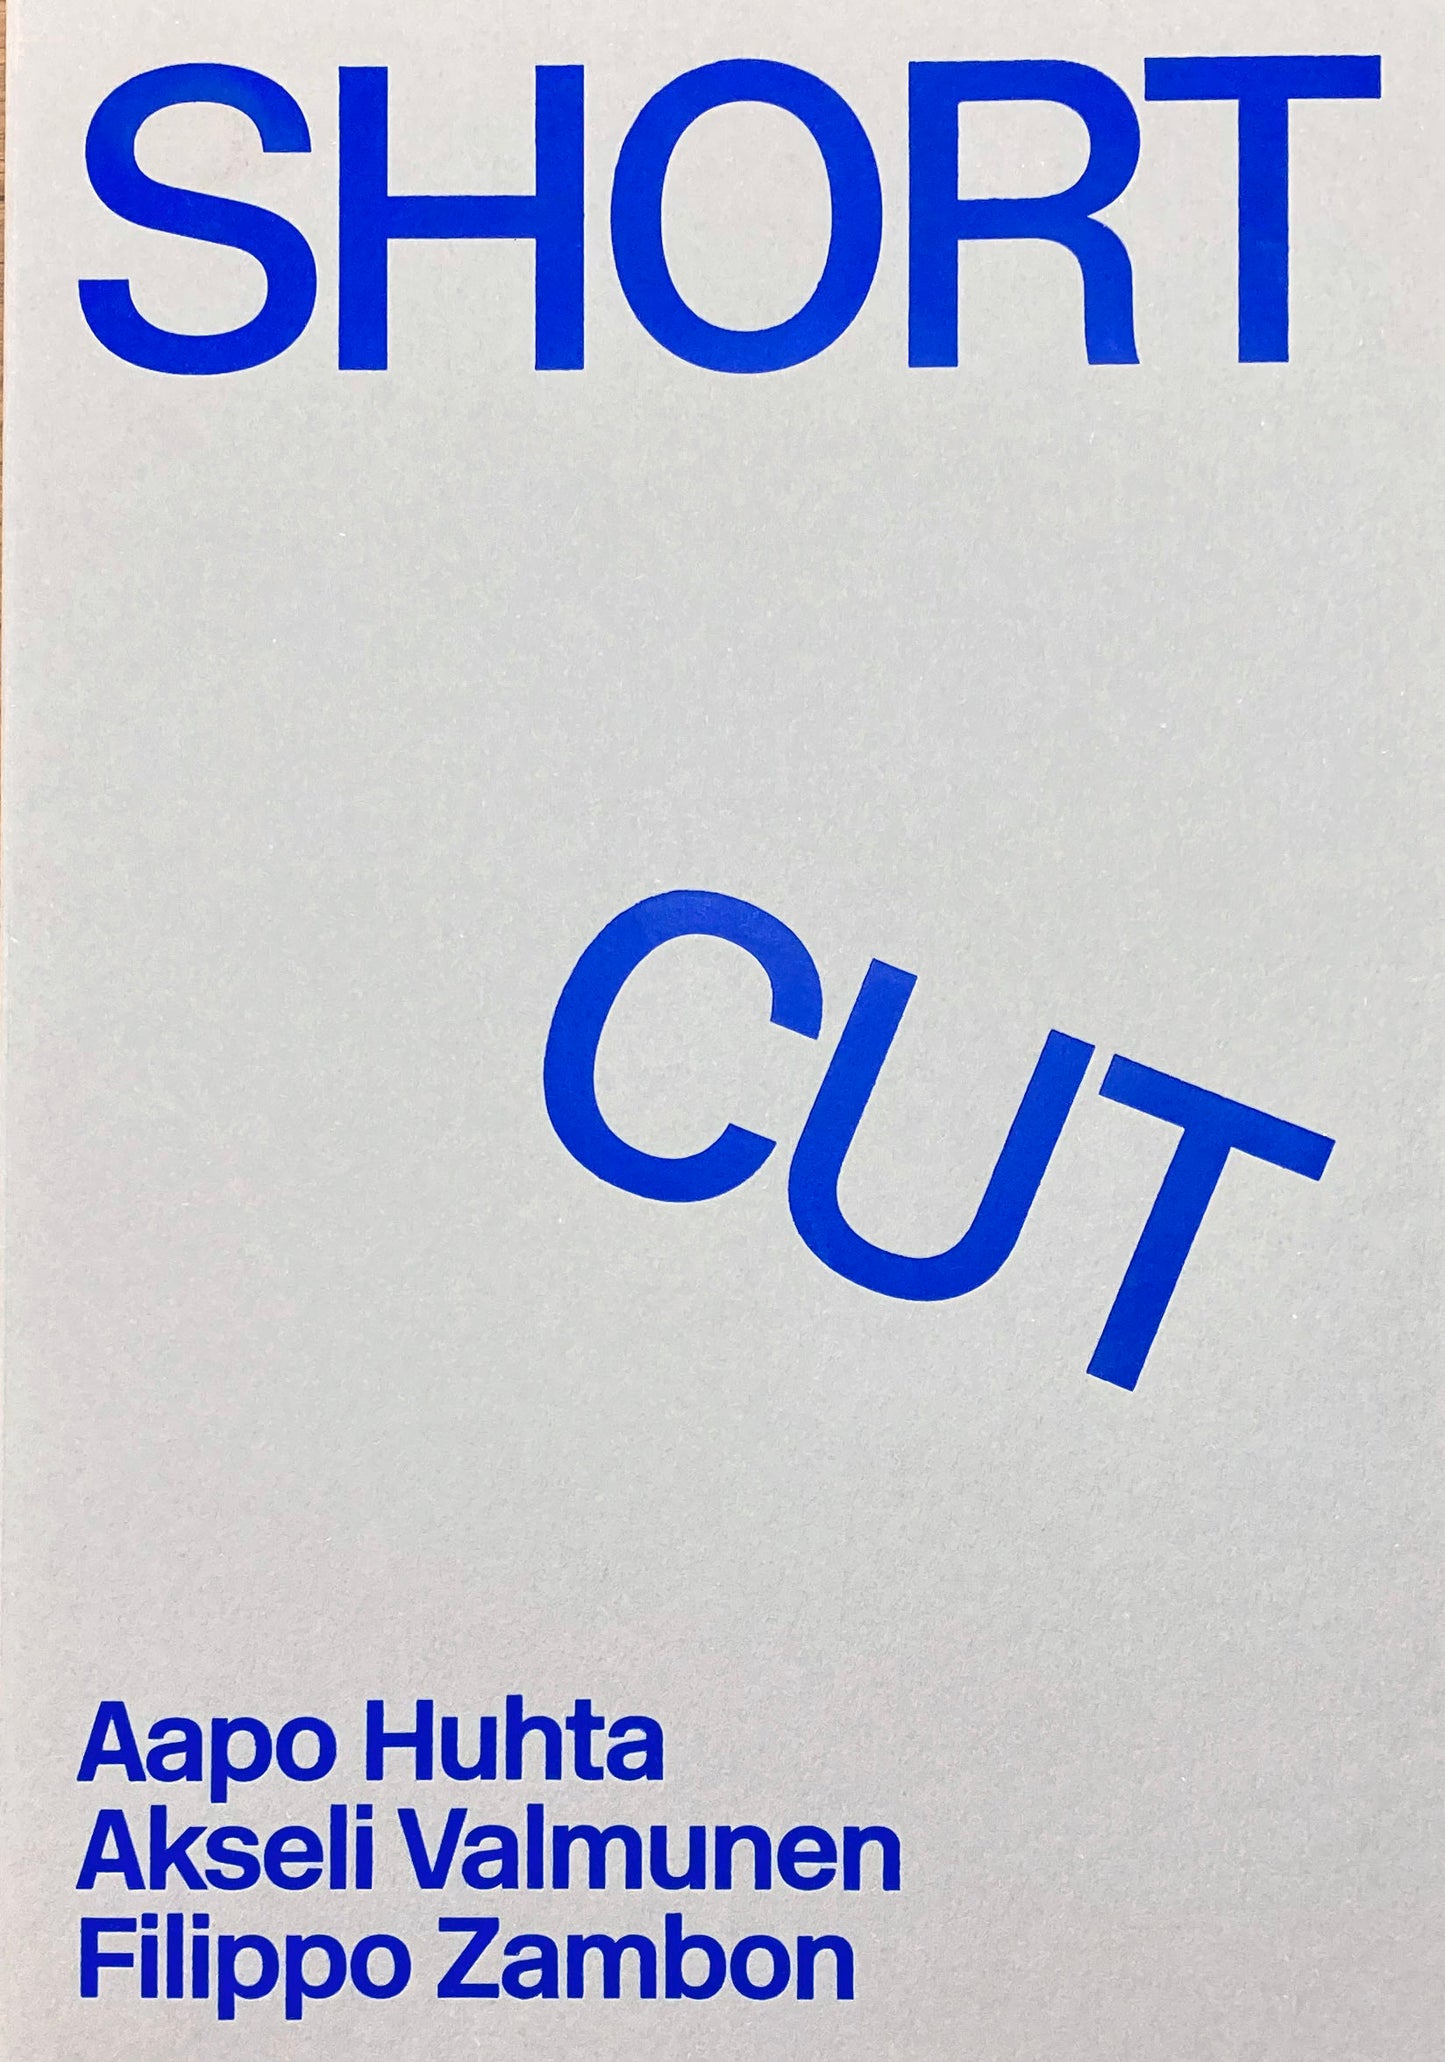 Aapo Huhta, Akseli Valmunen Filippo Zambon / Short Cut